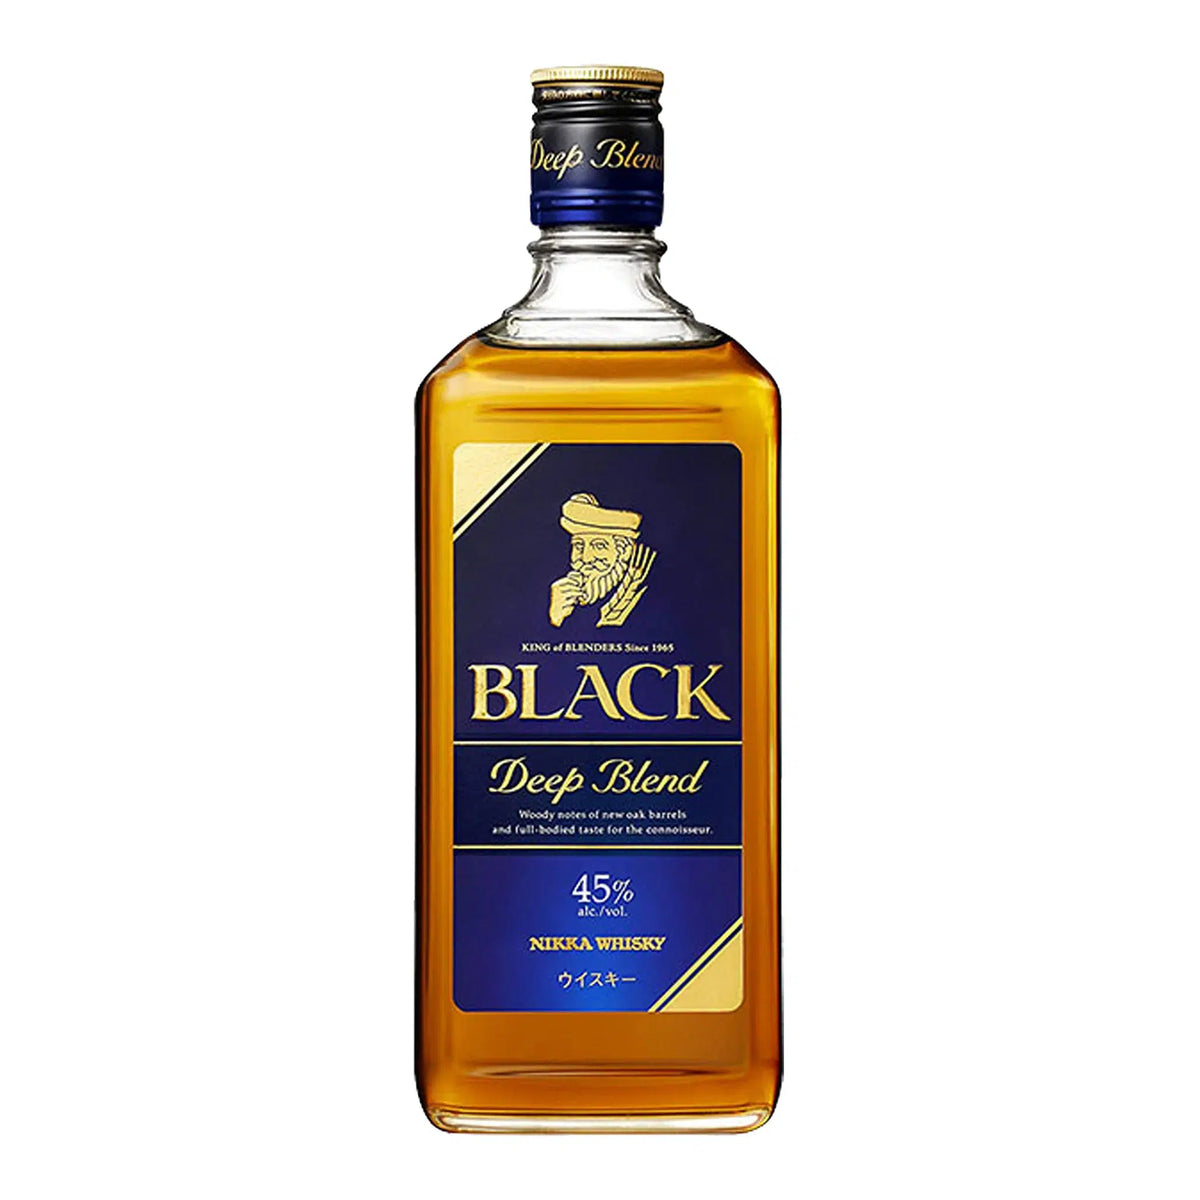 Nikka Black Deep Blend Japanese Whisky 700ml